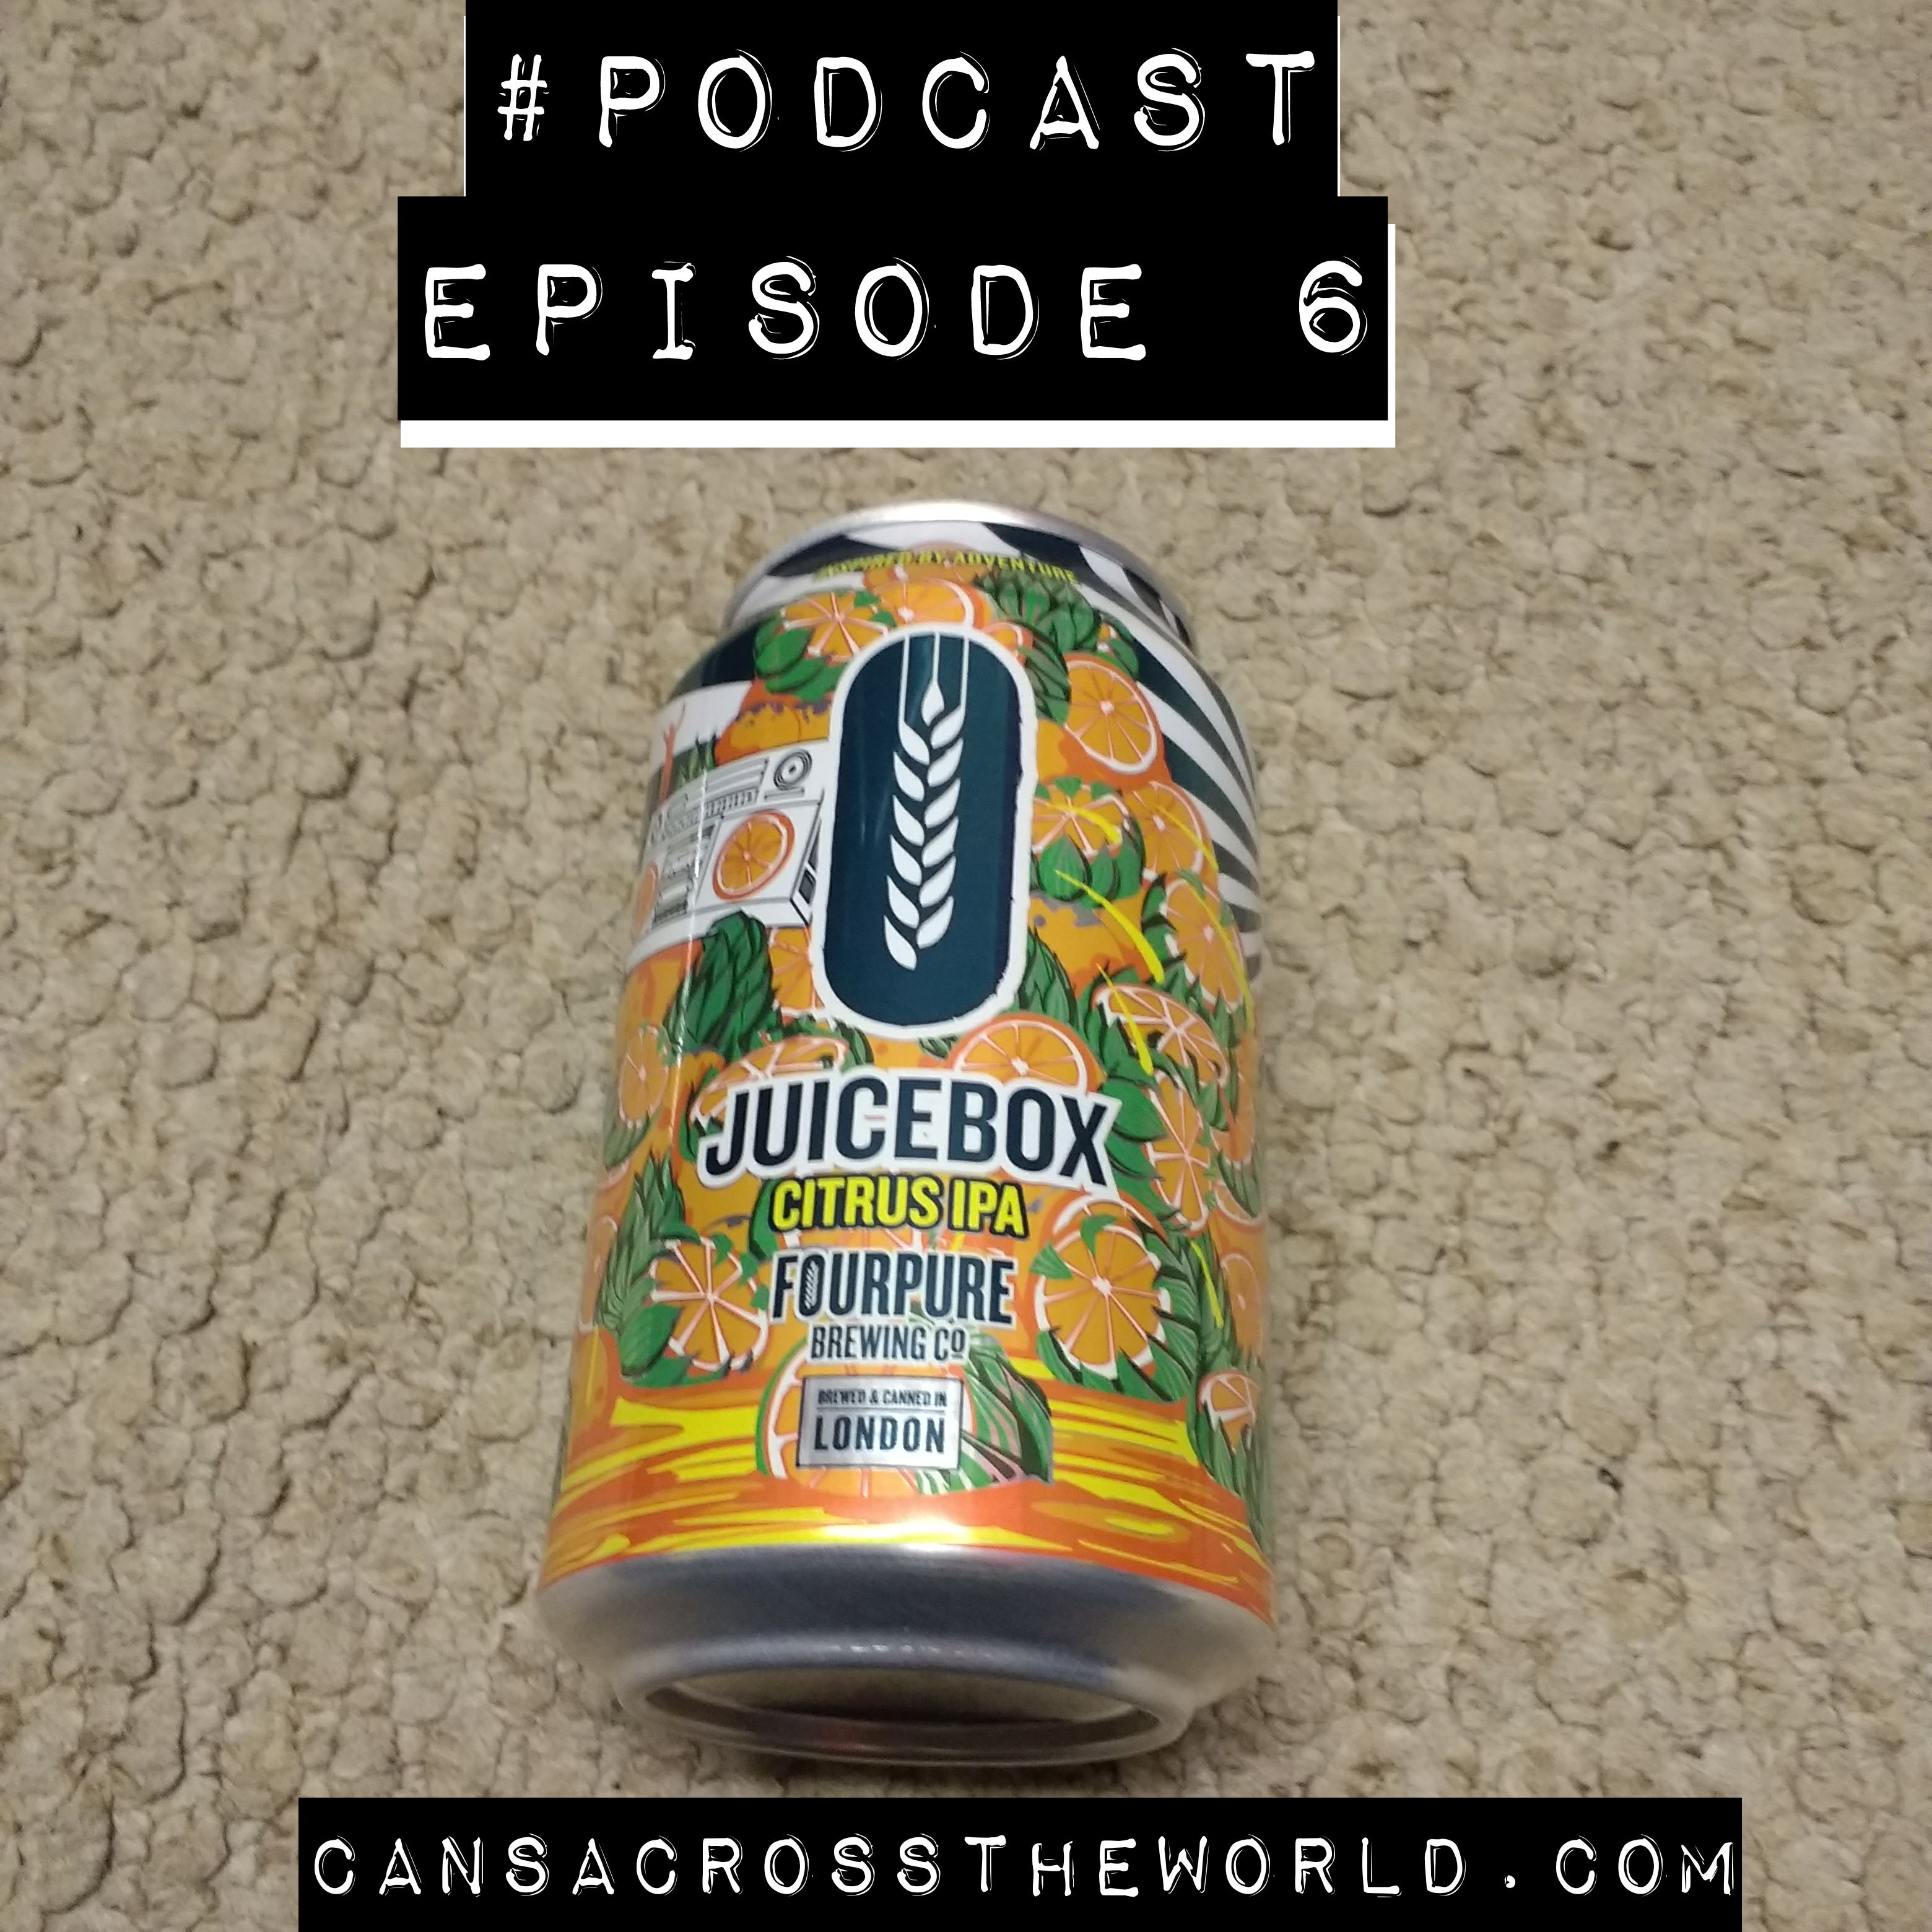 Episode 6 - Juicebox Citrus IPA (Fourpure Brewing)